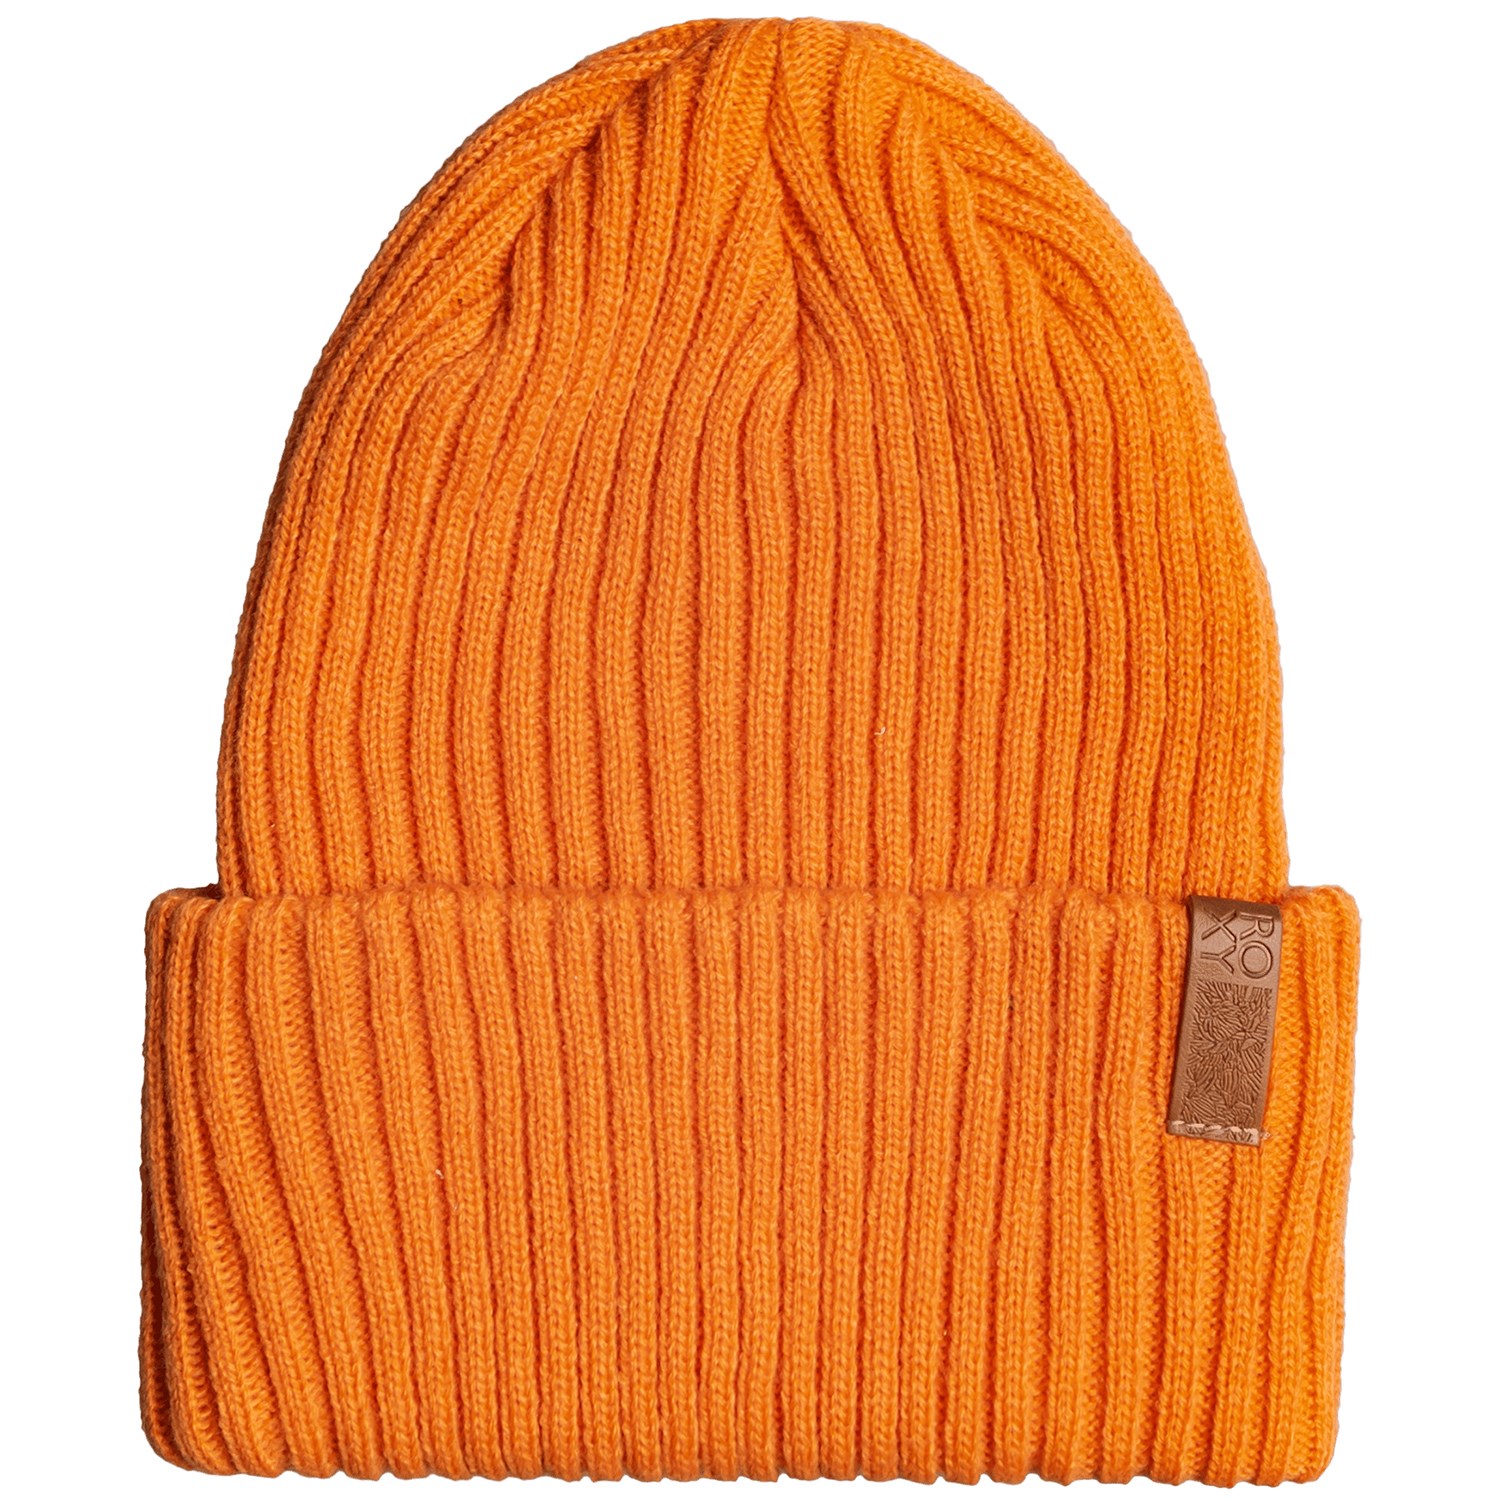 Шапка - Бини Roxy Dynabeat женская, оранжевый шапка бини размер 54 58 оранжевый